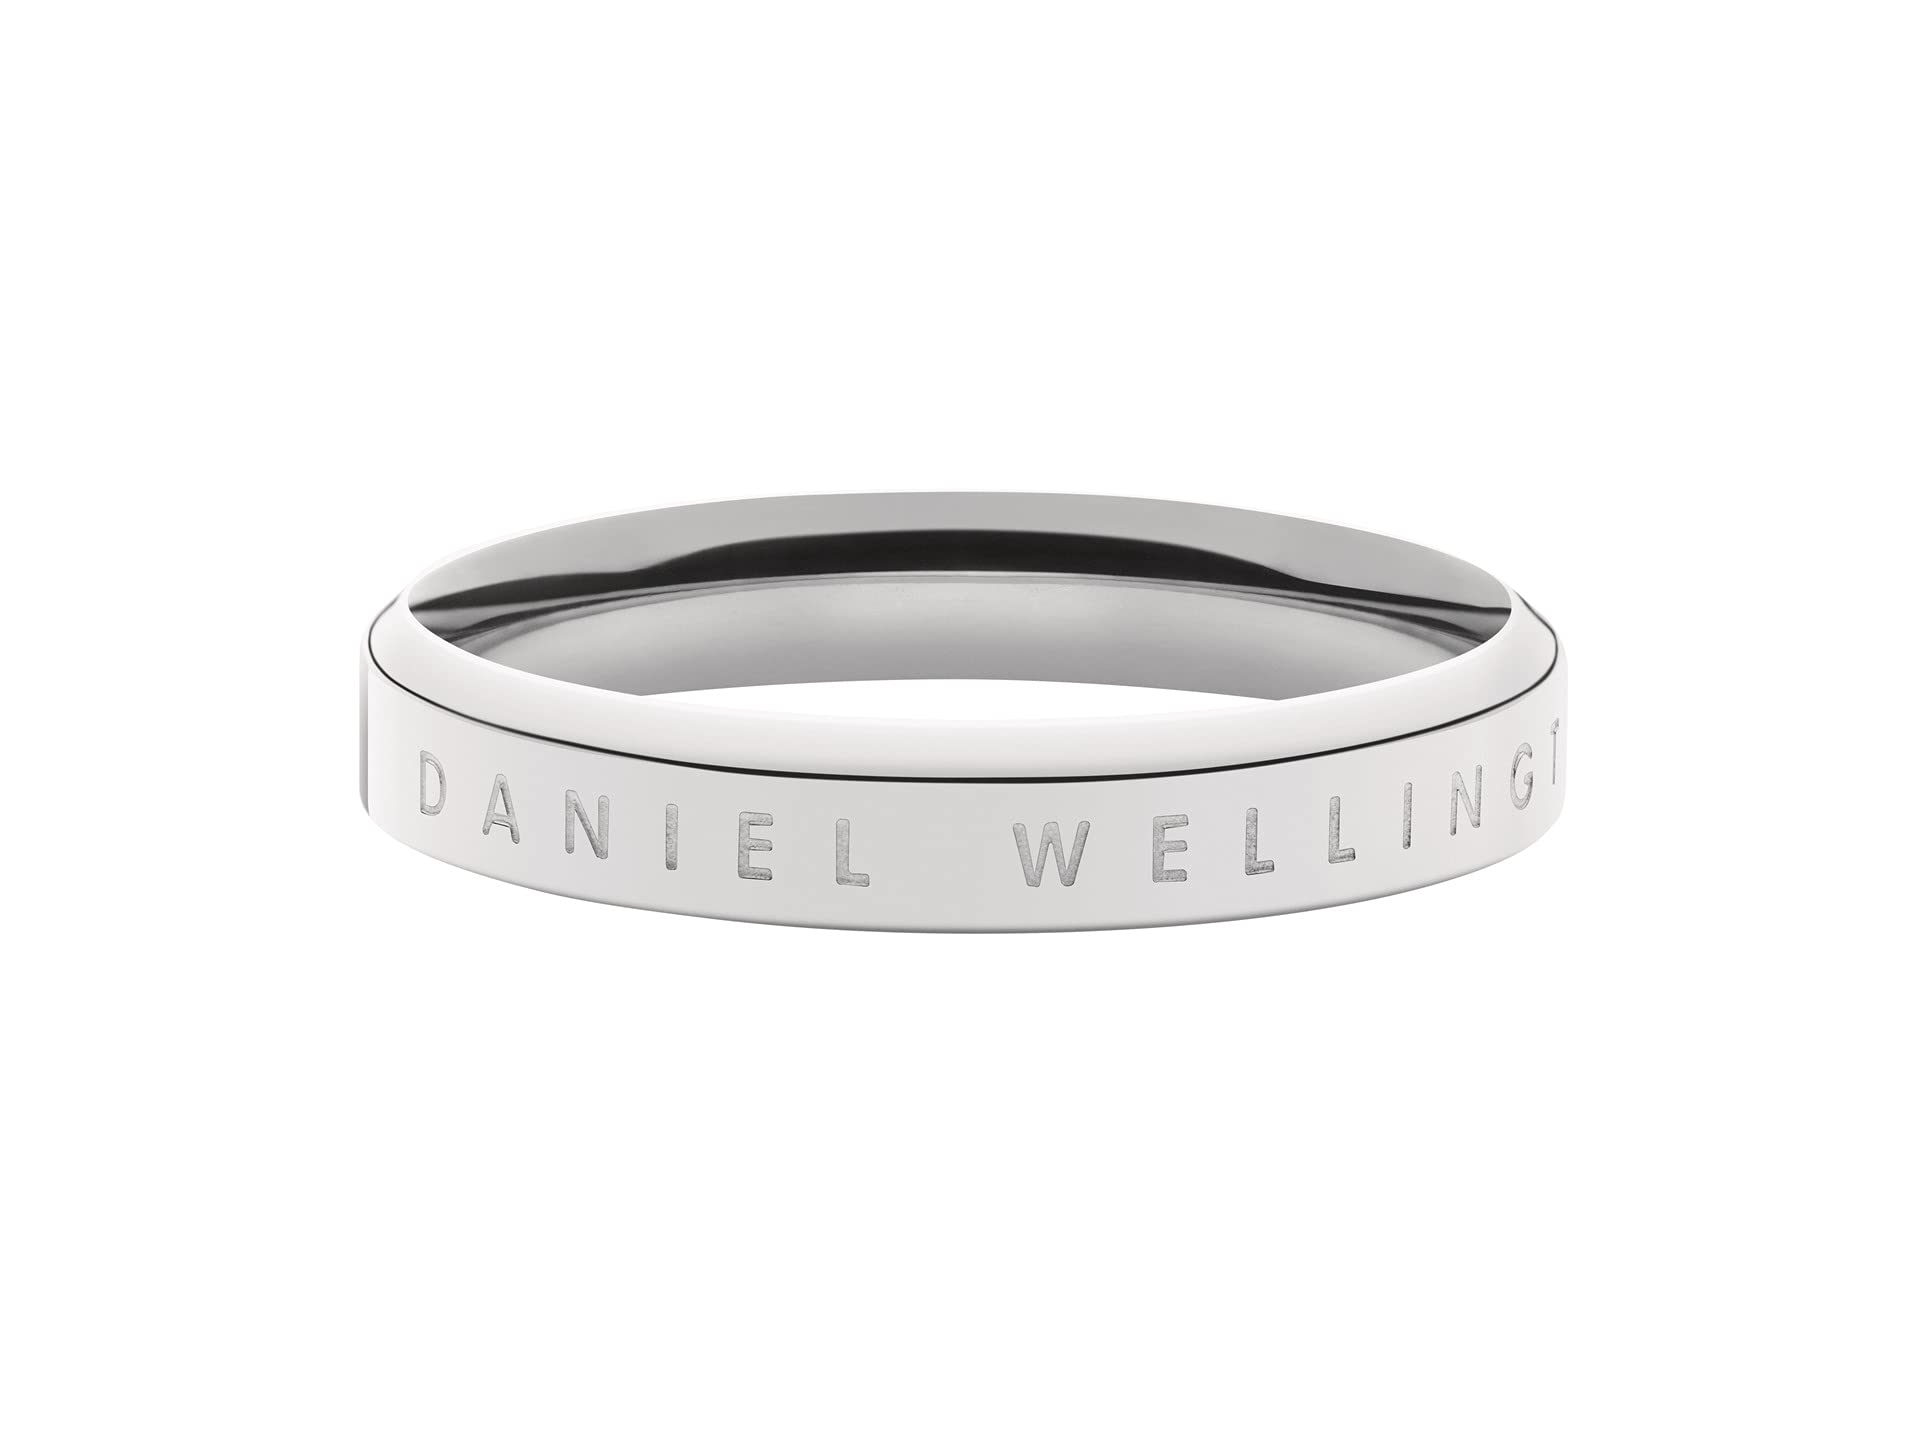 Классическое кольцо Daniel Wellington